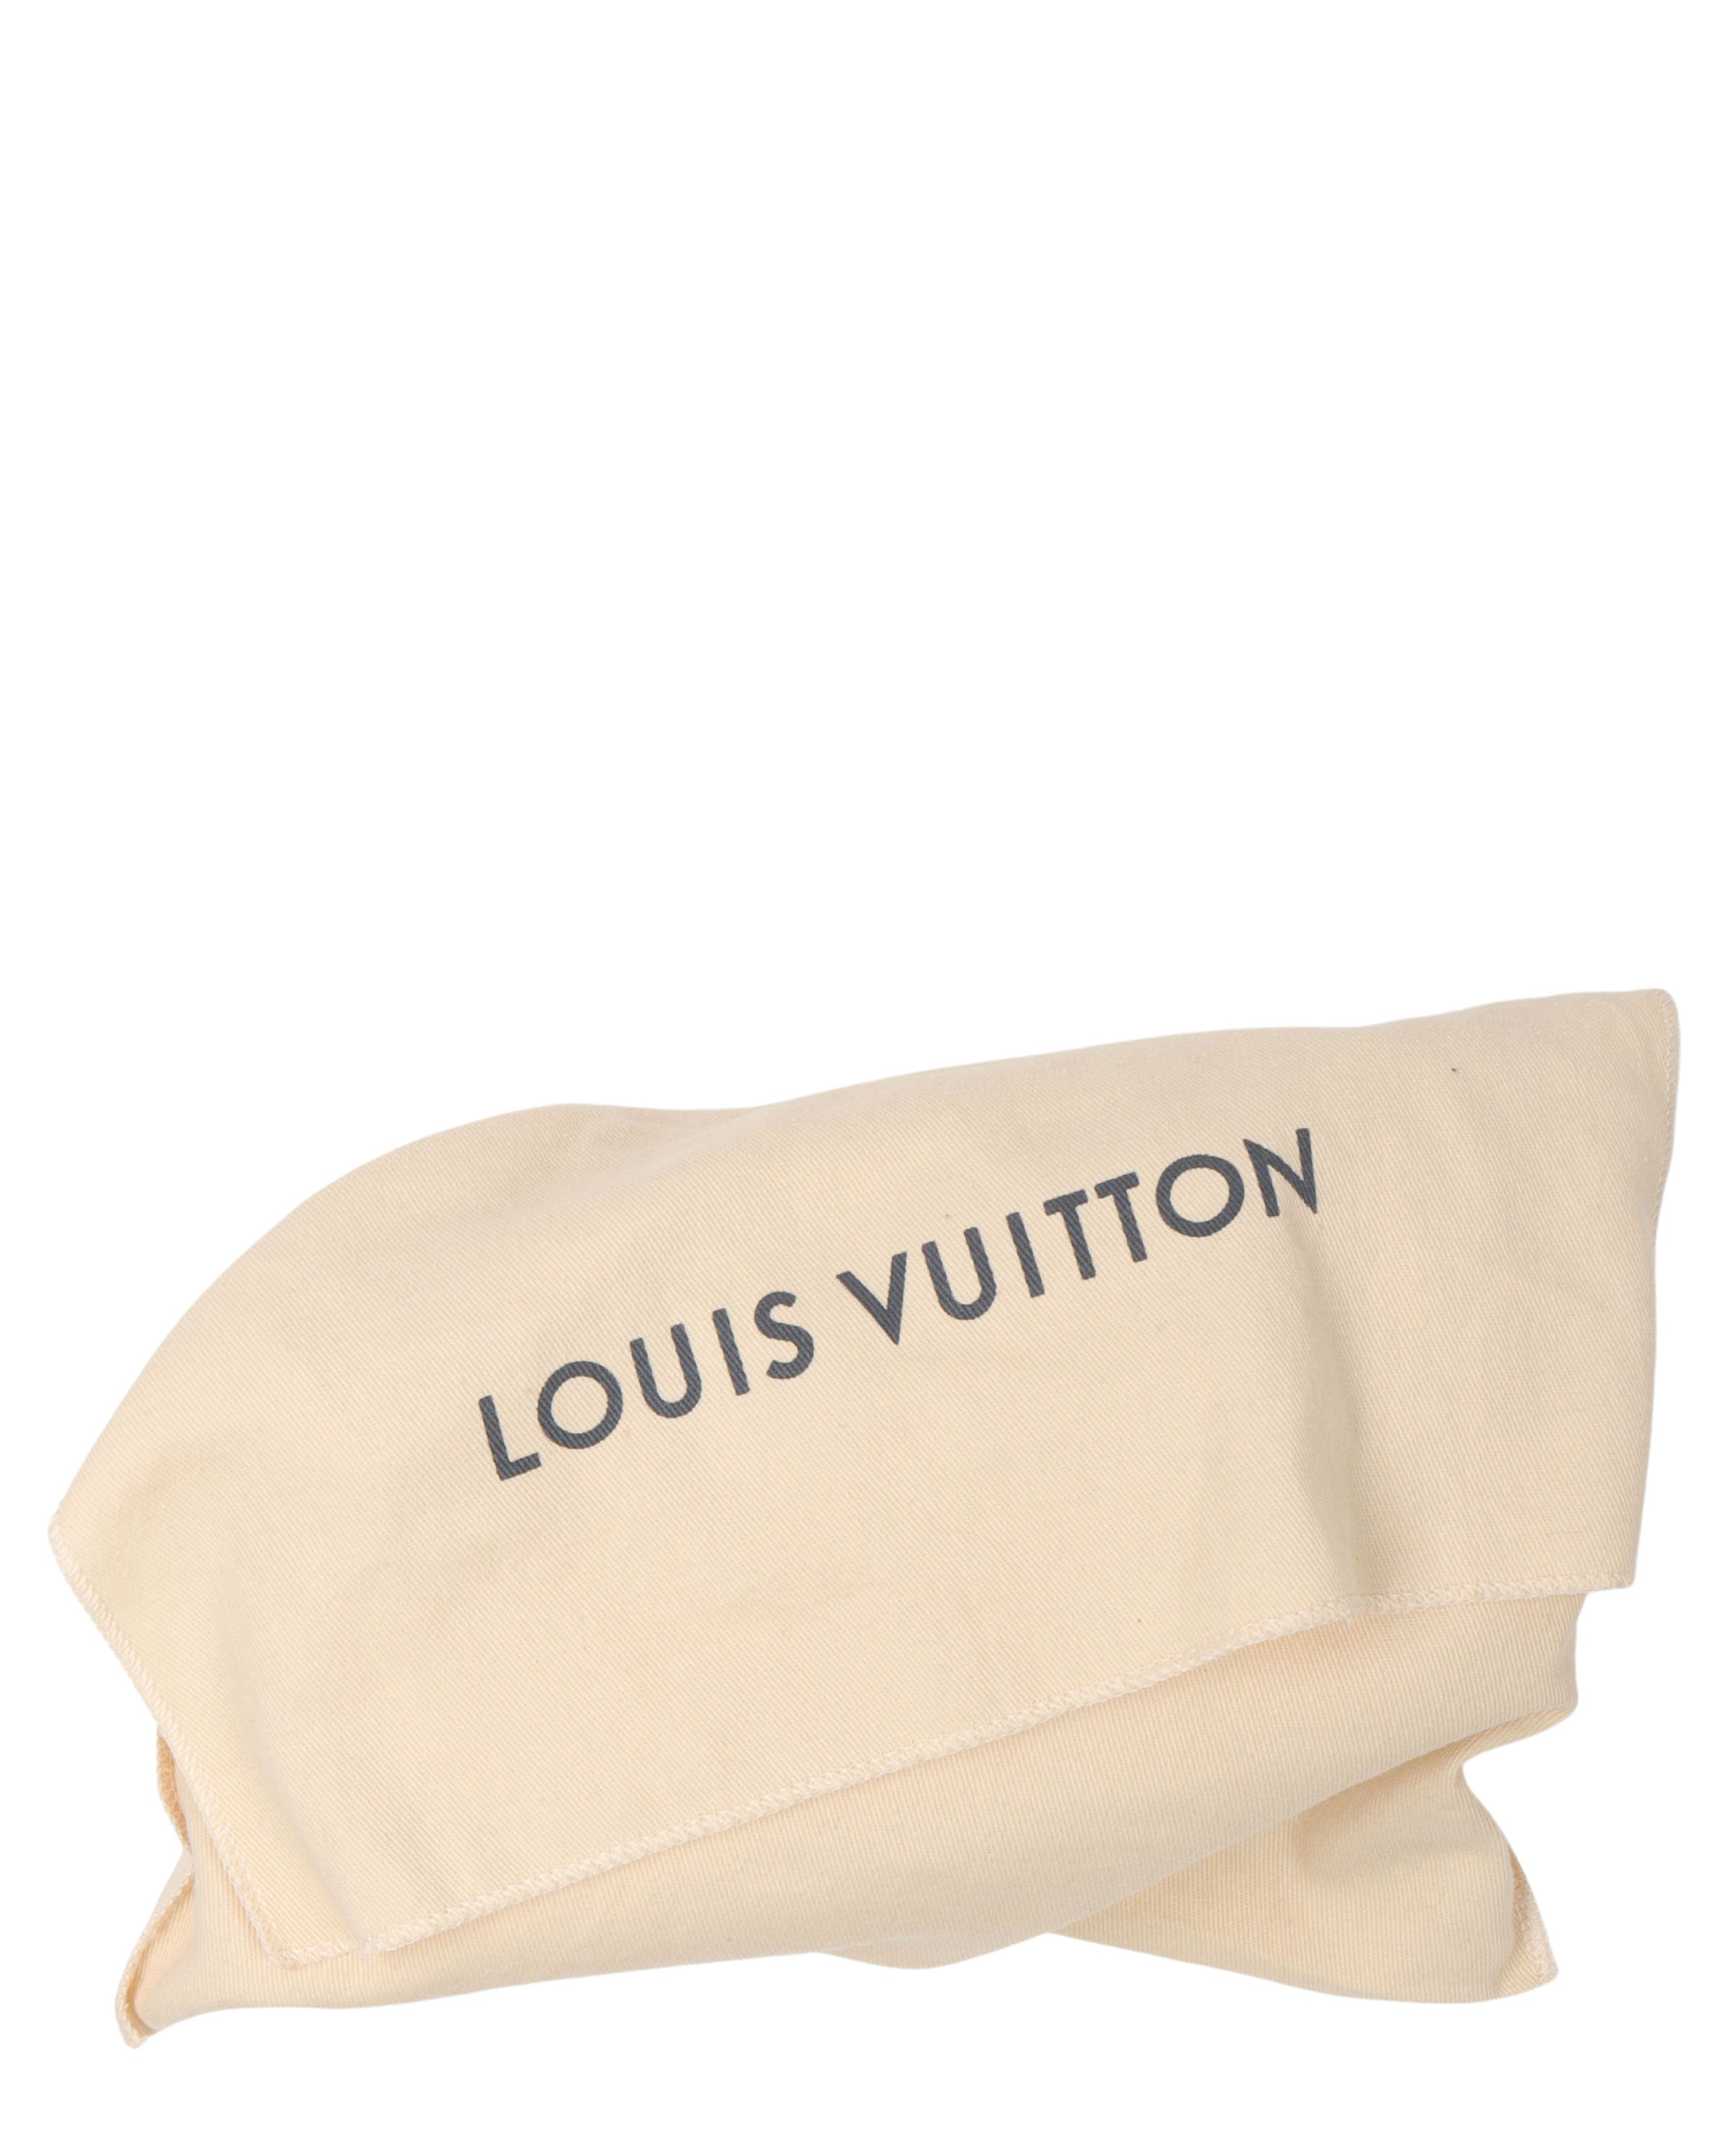 Louis Vuitton Pochette Volga Monogram Prism in PVC with White - US